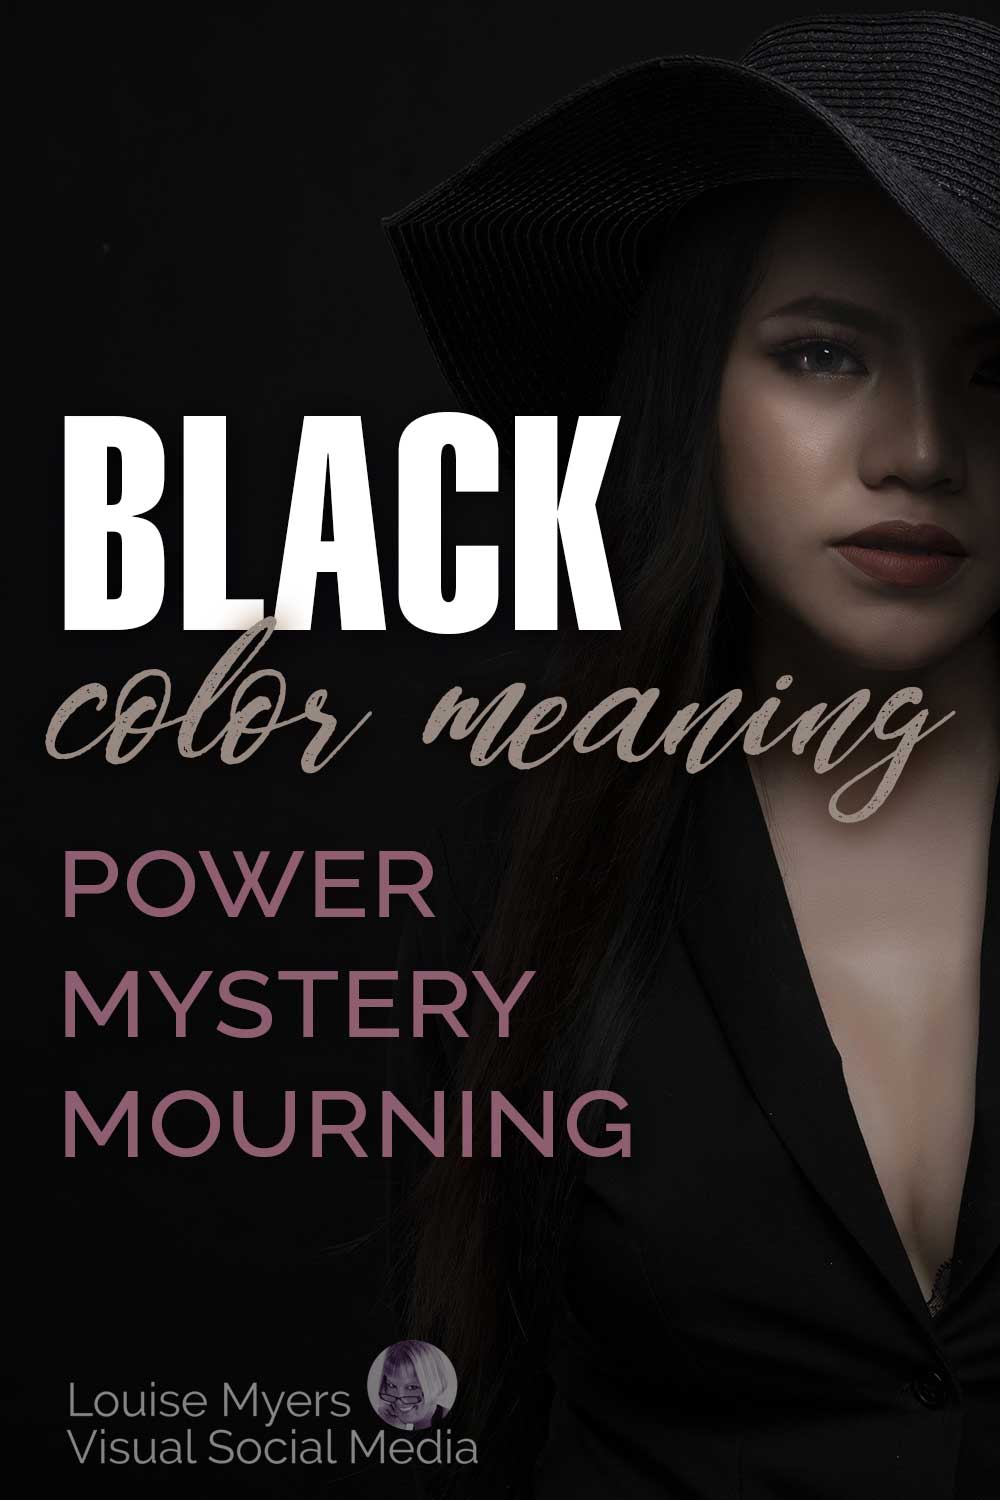 заштрихованная и загадочная женщина в черном на черном фоне с текстом, значением черного цвета, тайным трауром власти.